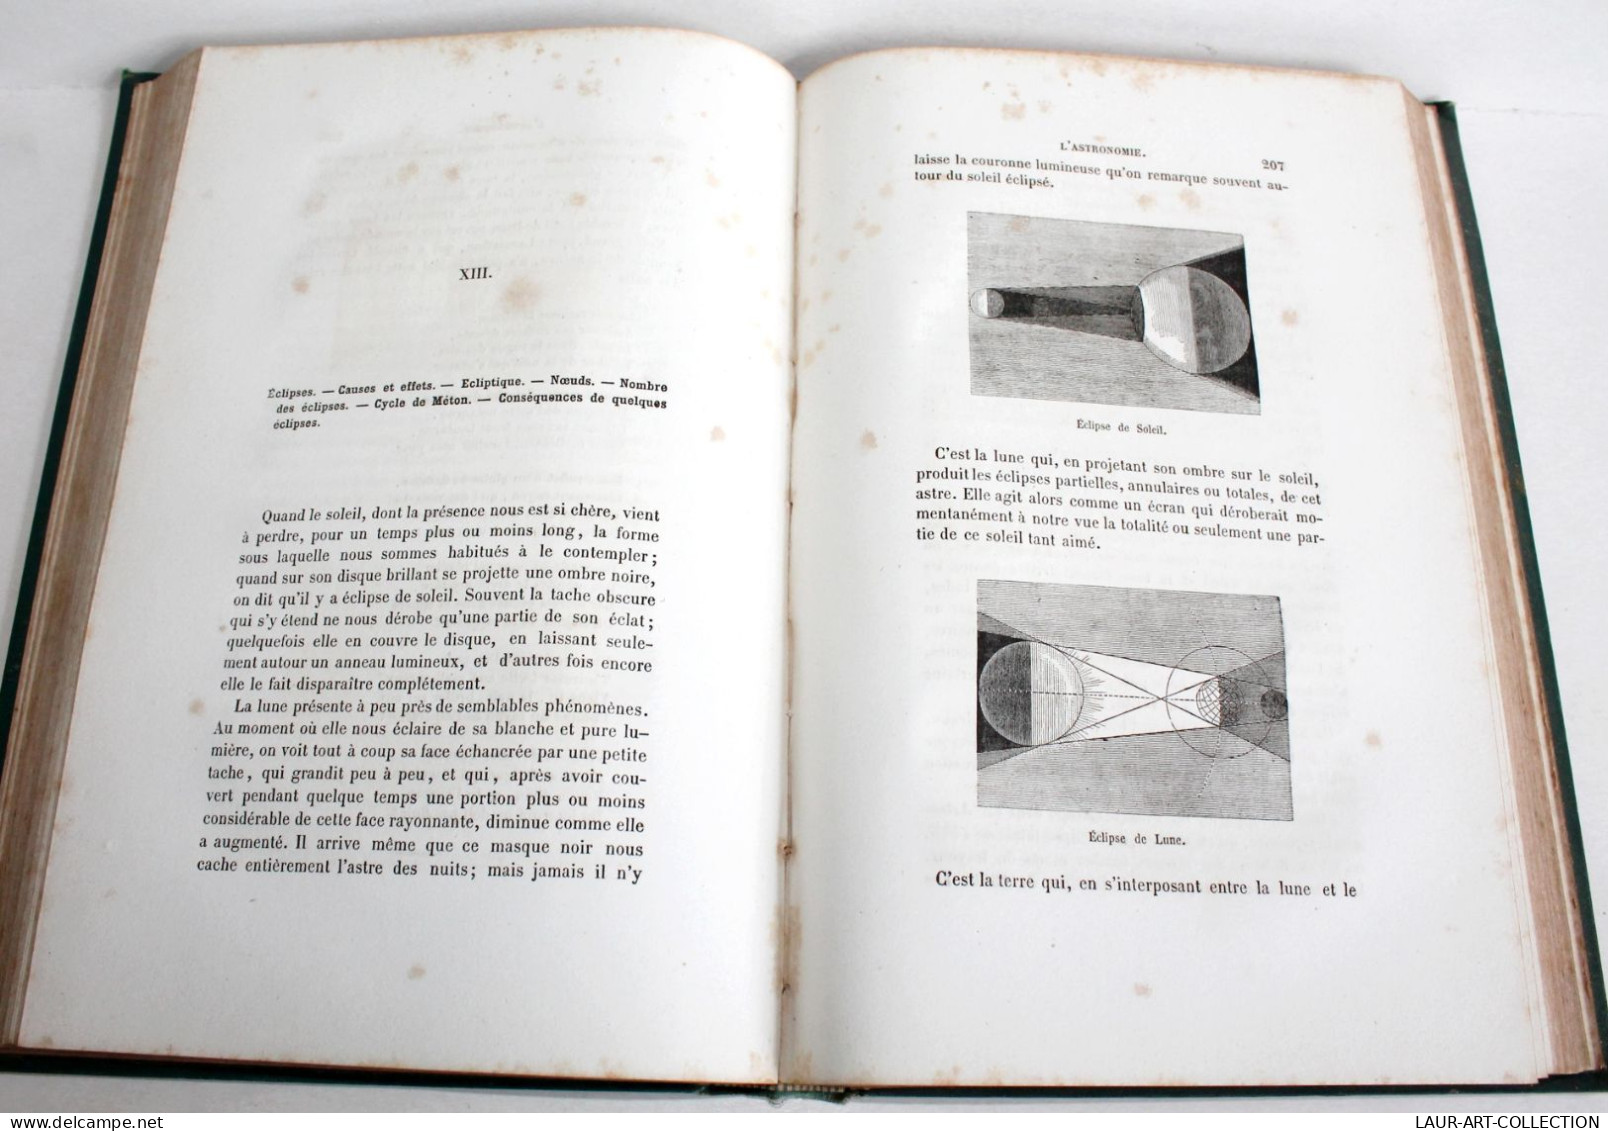 L'ASTRONOMIE OUVRAGE DEDIE A JEUNESSE CHRETIENNE De DARCEY + GRAVURE 1878 MEGARD / ANCIEN LIVRE XIXe SIECLE (2603.135) - Sterrenkunde